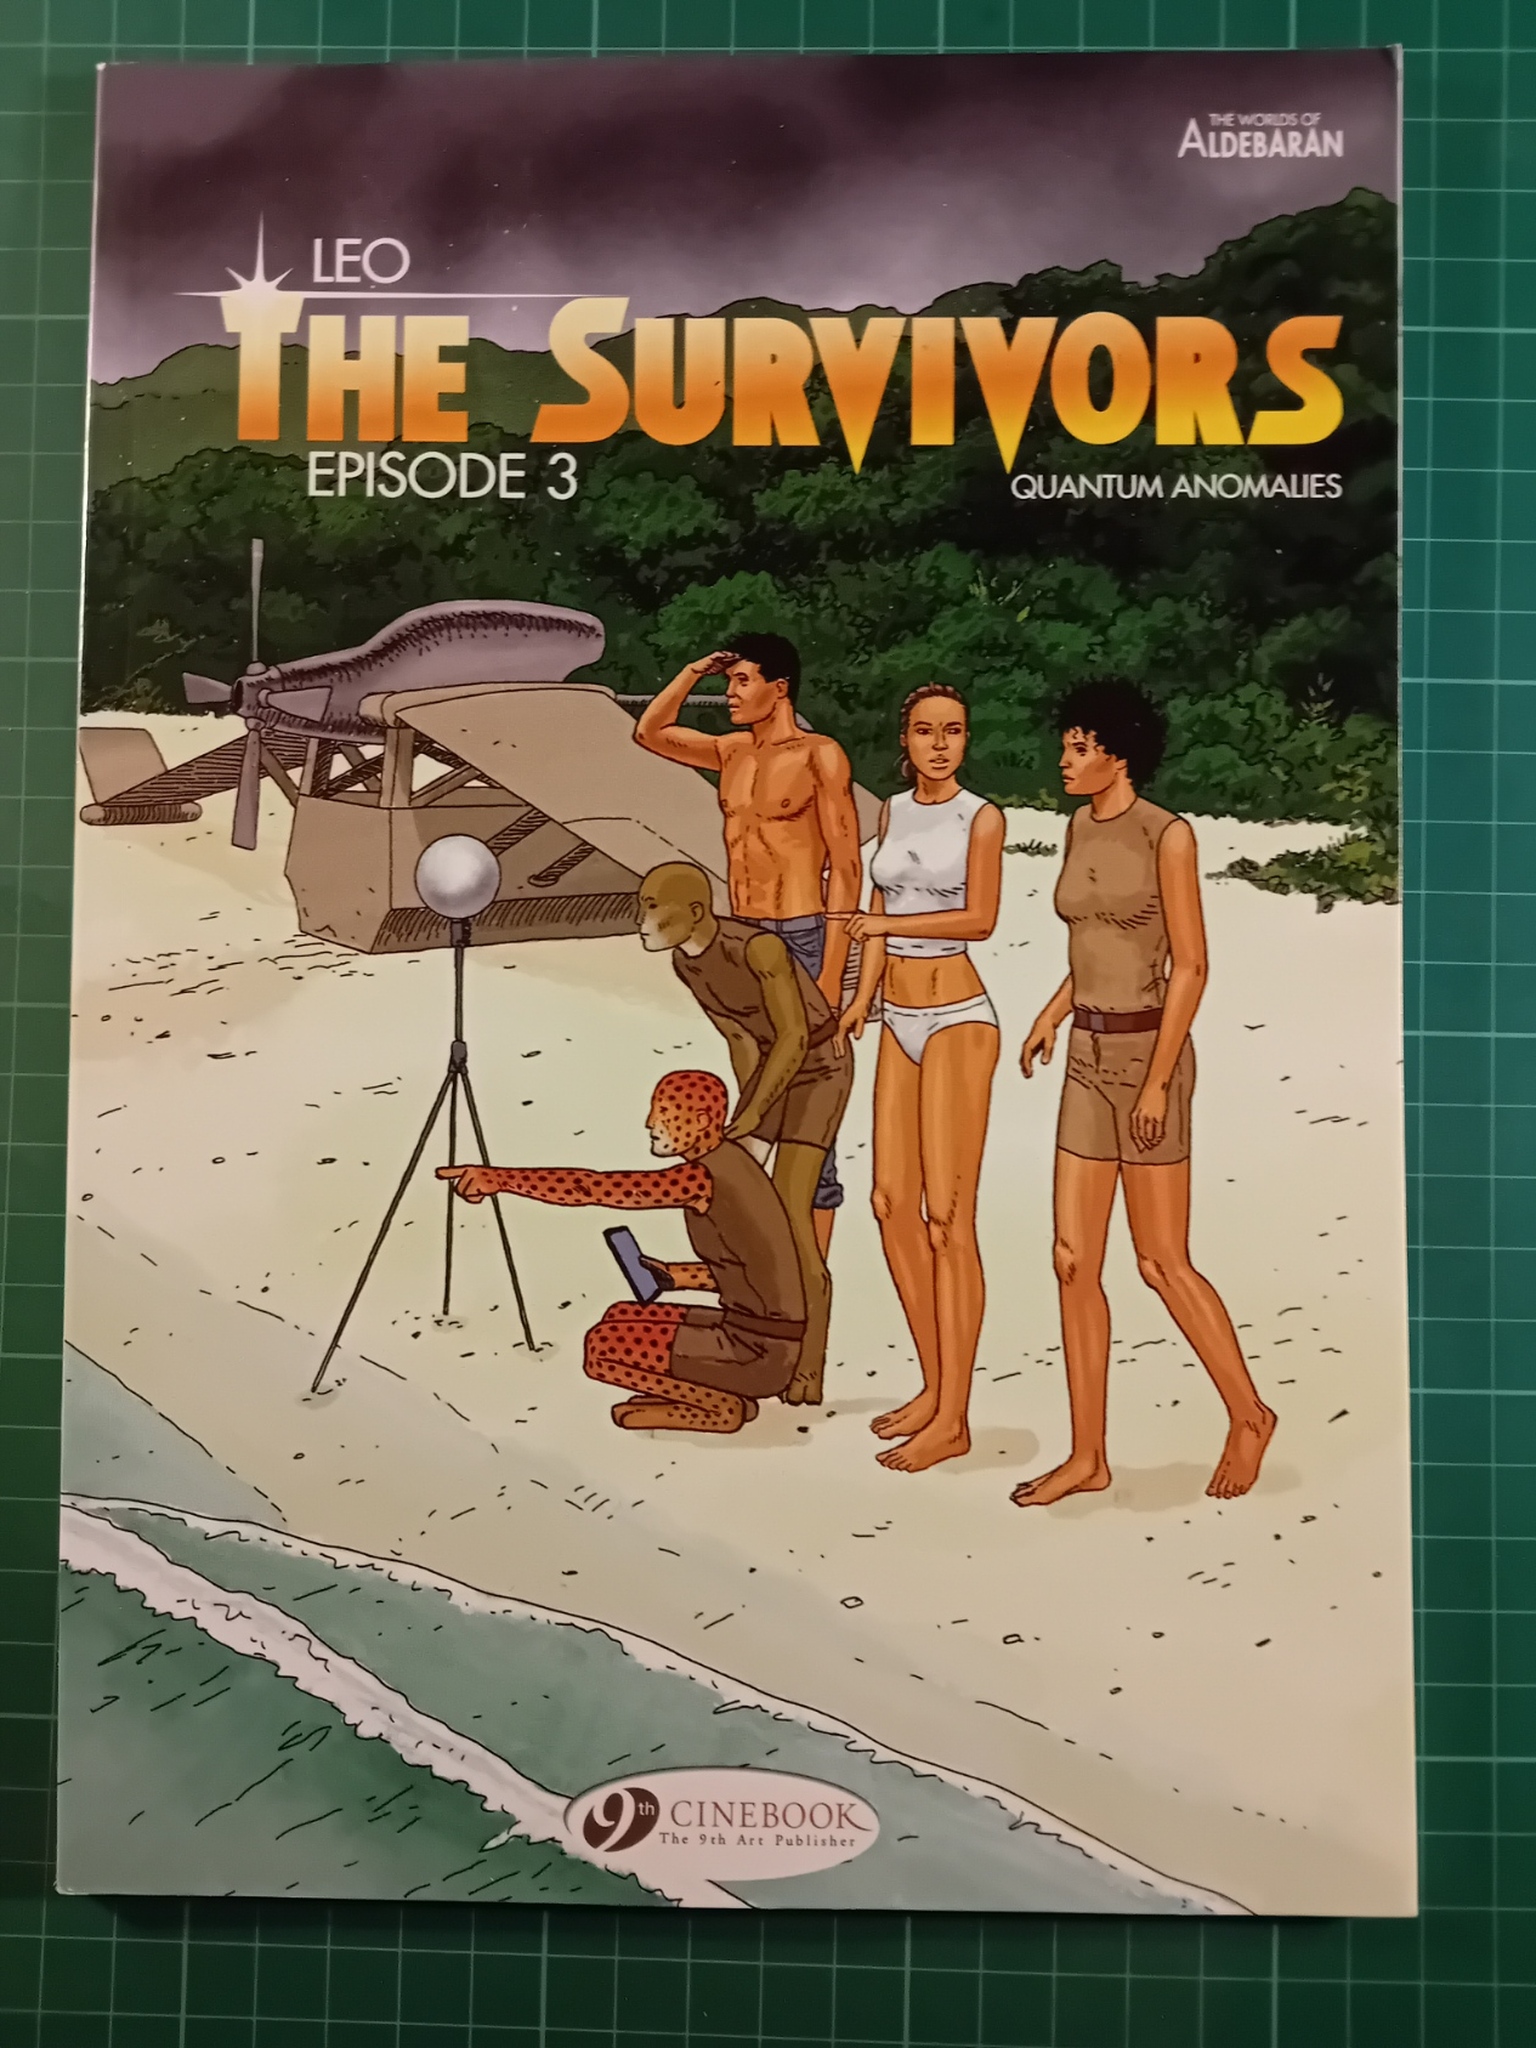 The Survivors Episode 3 (UK)